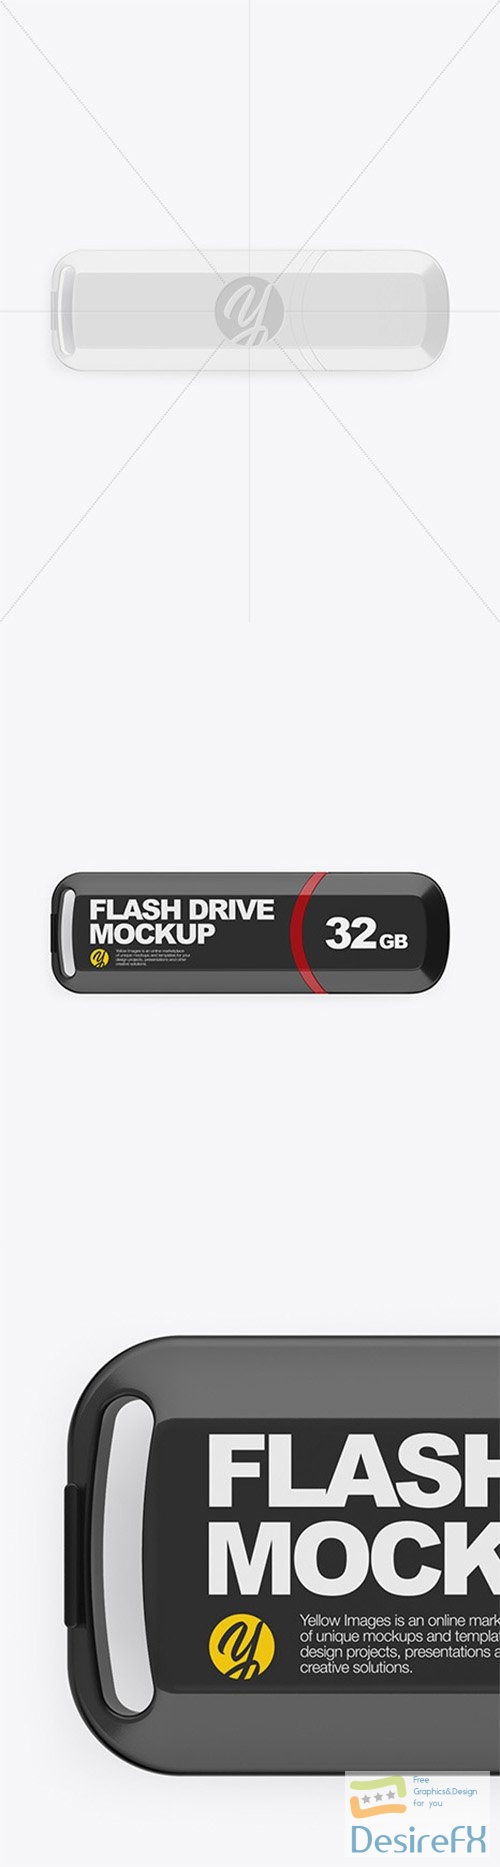 Glossy USB Flash Drive Mockup 80809 TIF